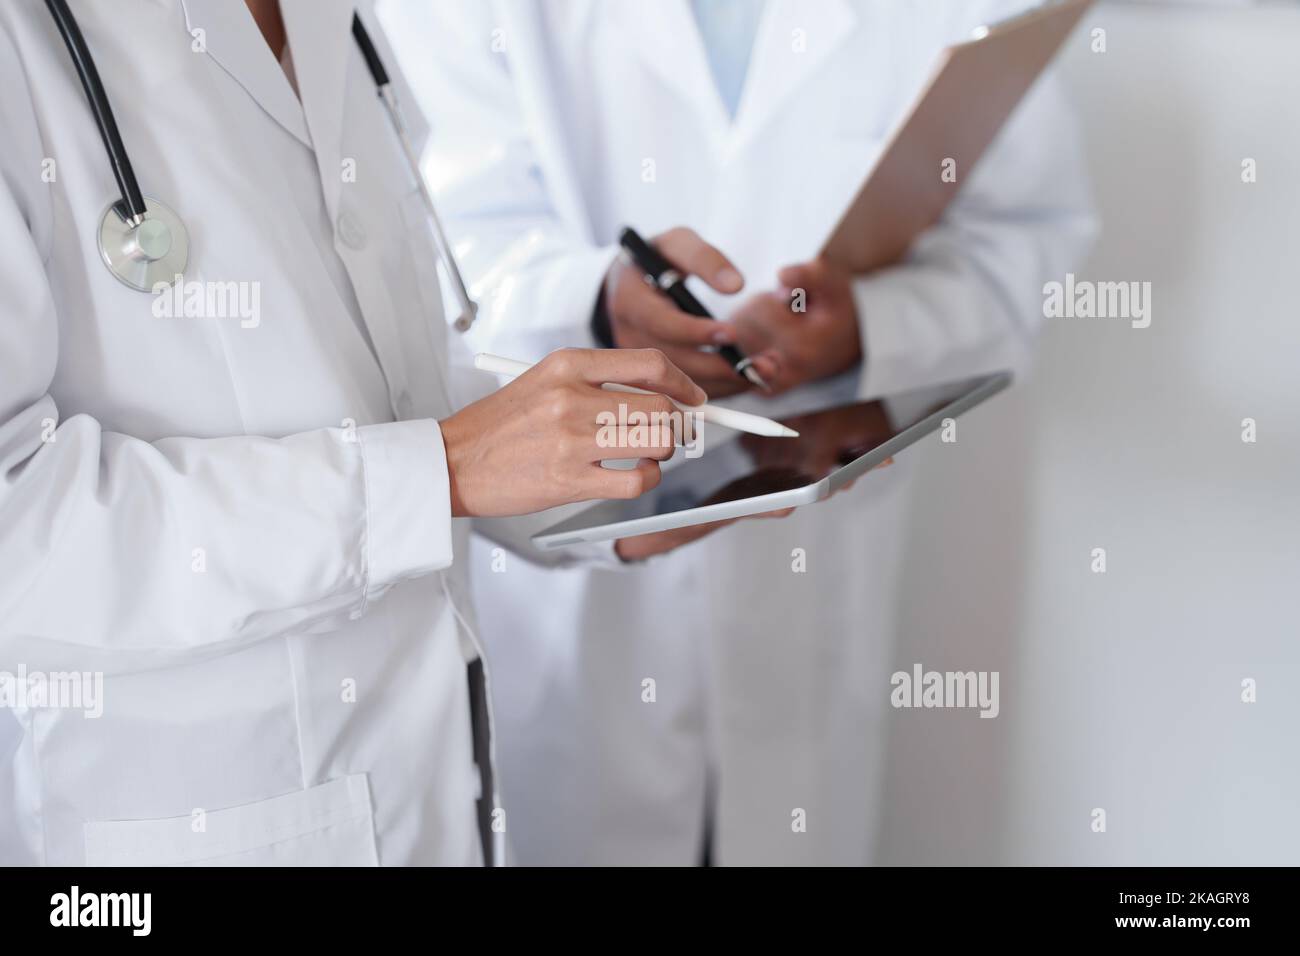 Portrait d'un médecin asiatique féminin et d'un médecin masculin utilisant un comprimé pour discuter des problèmes des patients avant le traitement Banque D'Images